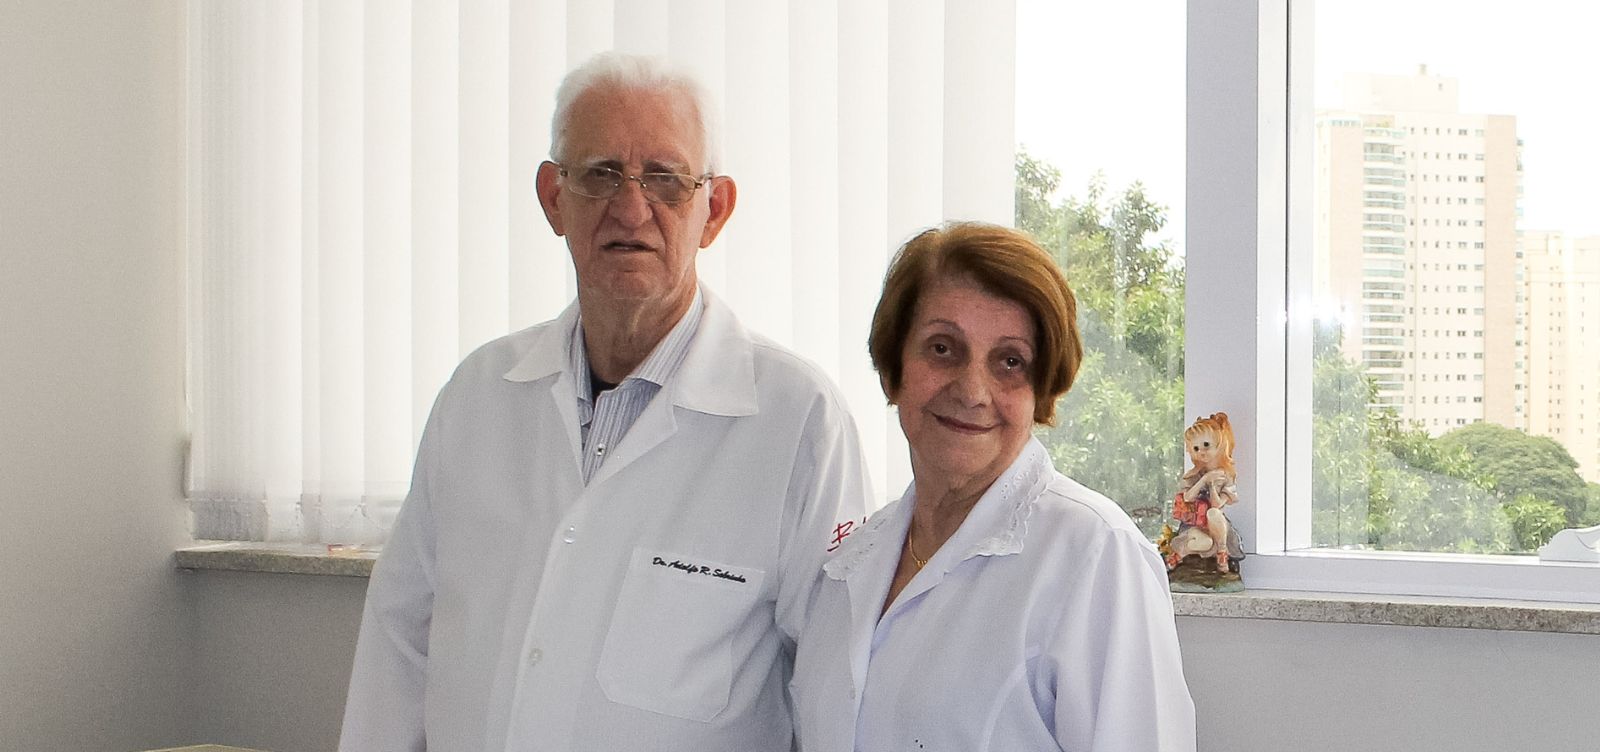 Dr. Adolfo e Dra. Marineide juntos no centro médico.